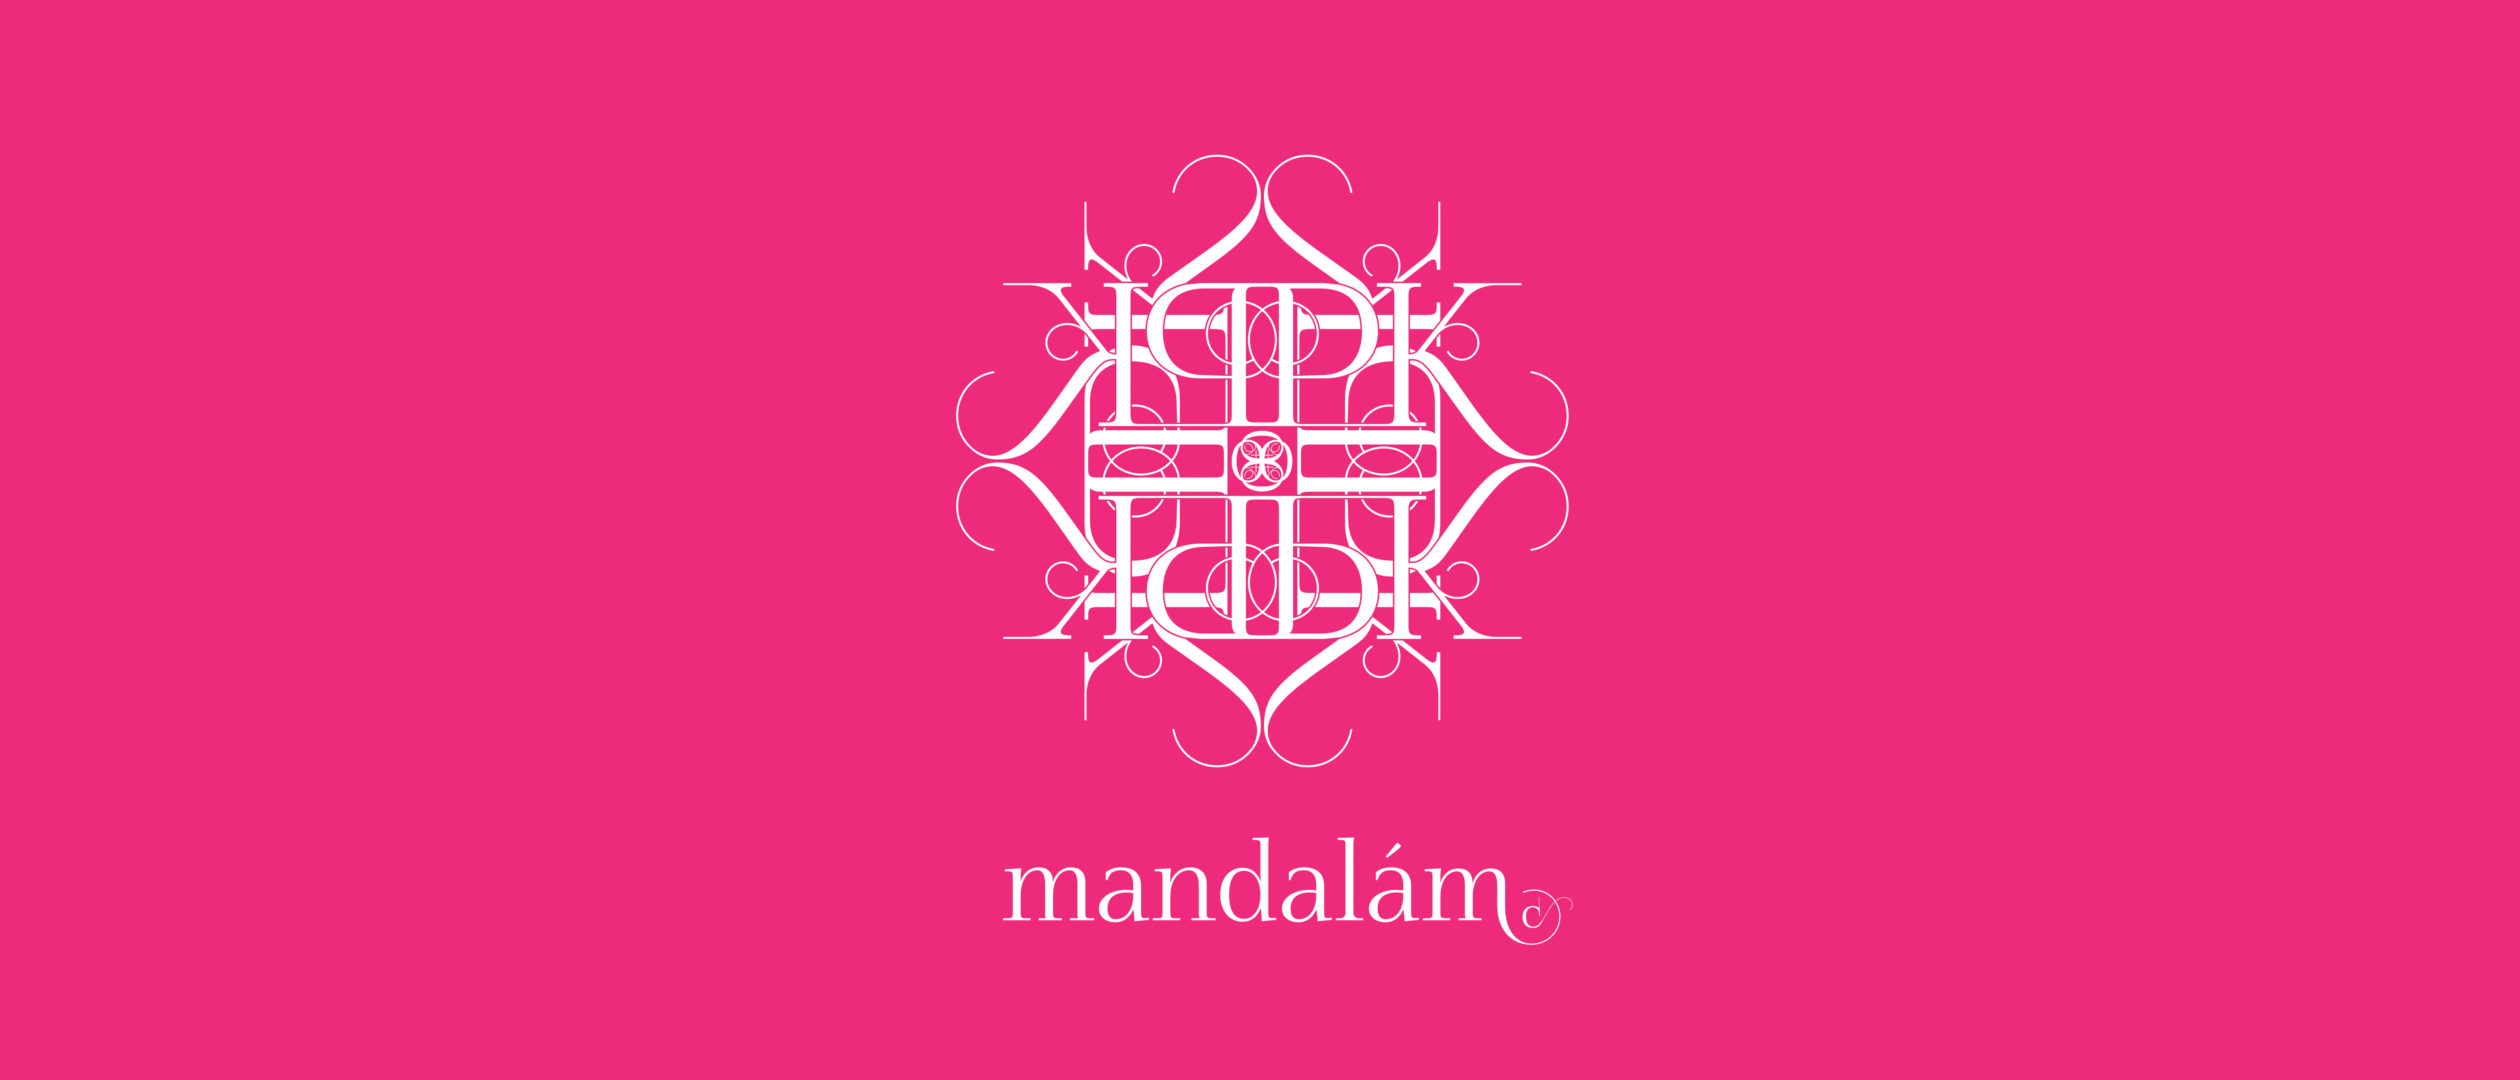 Személyes mandala monogramból, vagy egyszerű jelből 